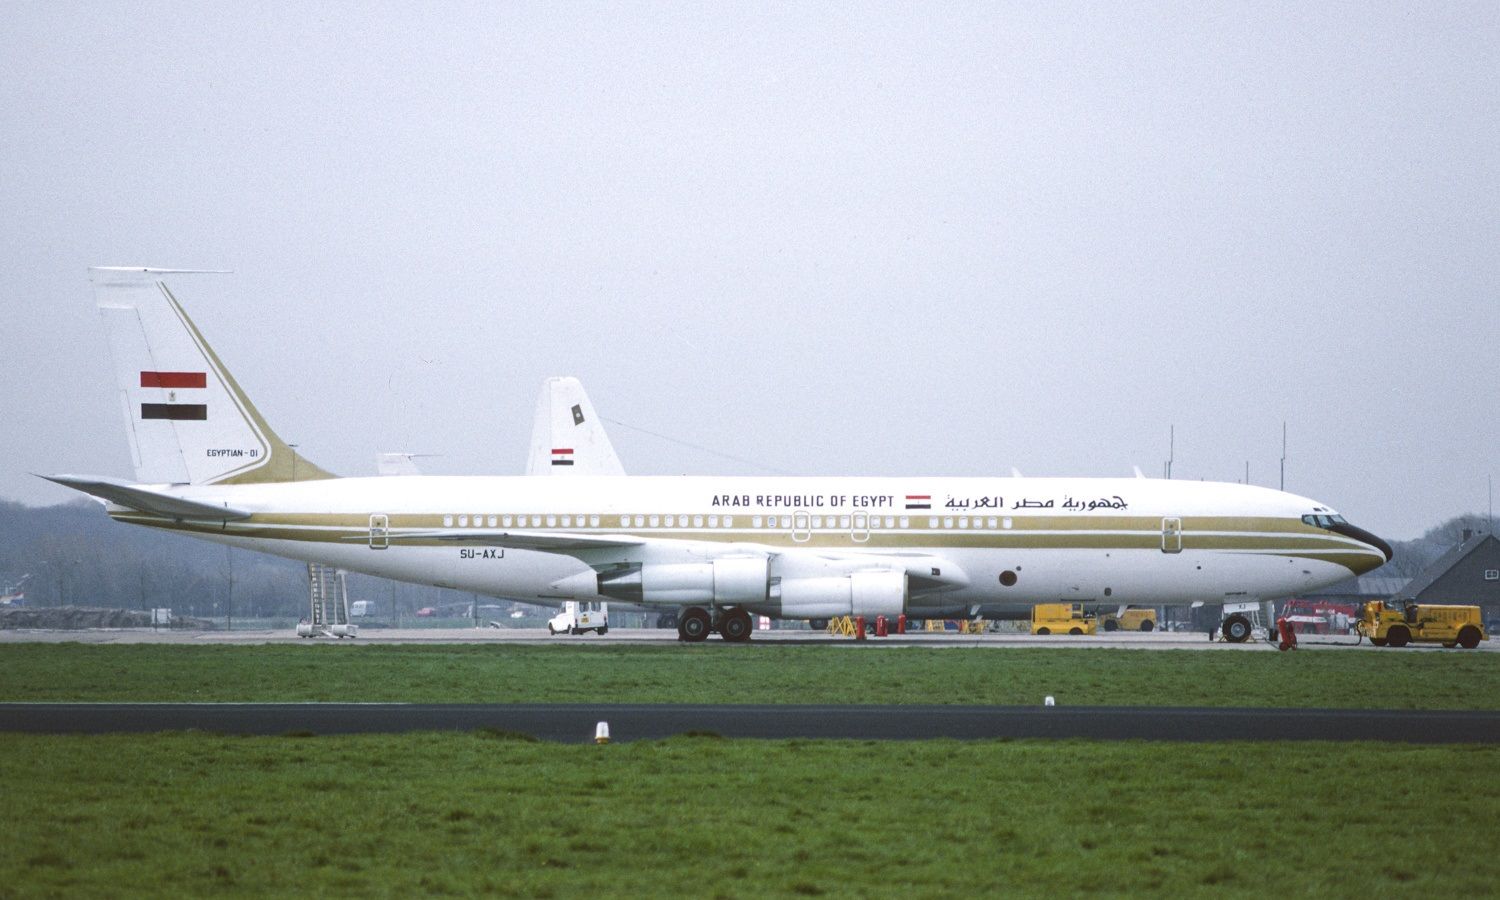 طائرة الرئاسة المصرية في مطار لايدن فالينبورج بهولندا بتاريخ 11 مارس 1989. - airhistory.net